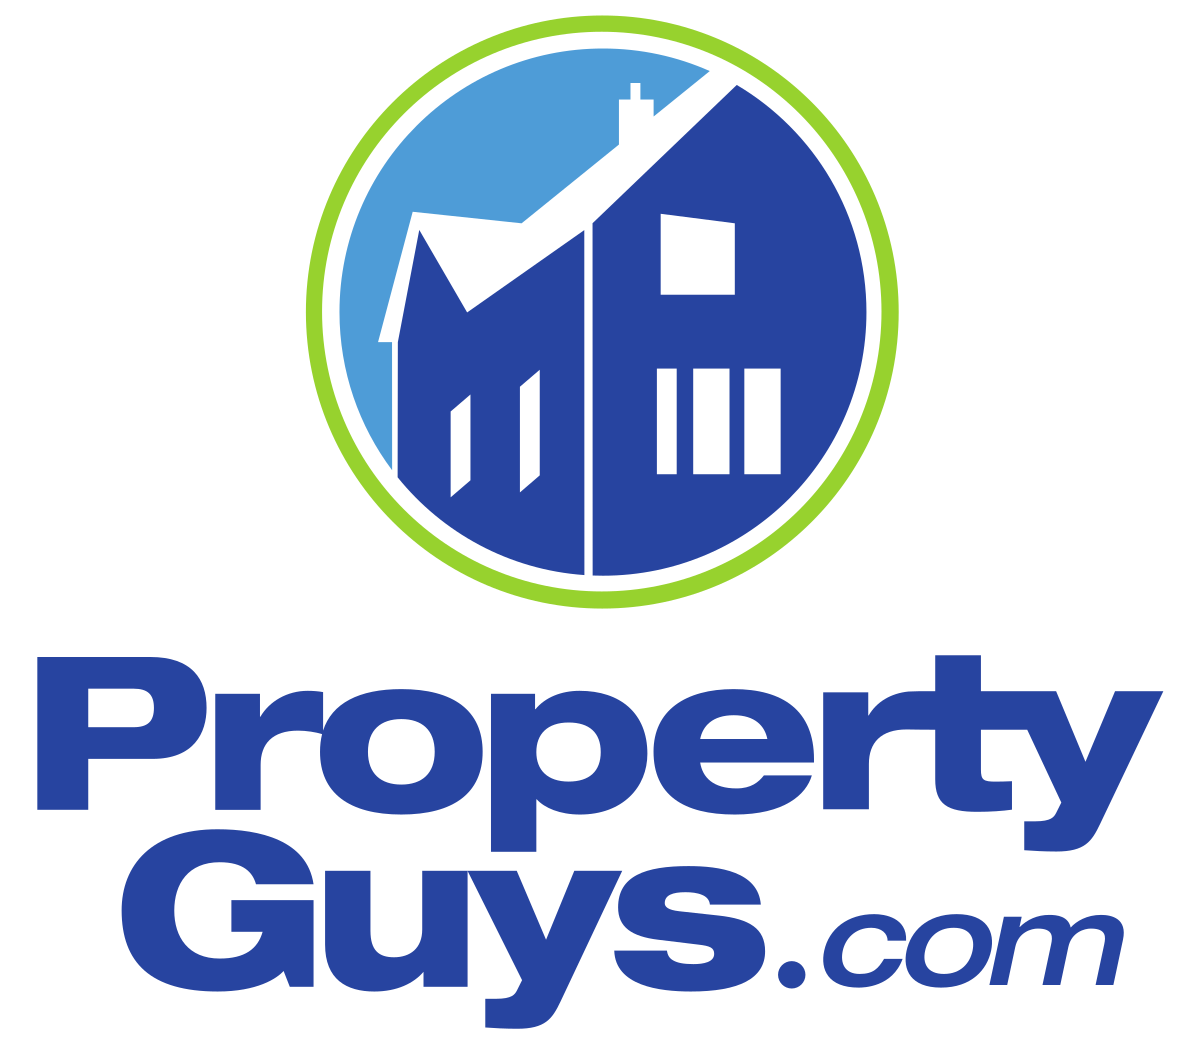 Property Guys .com